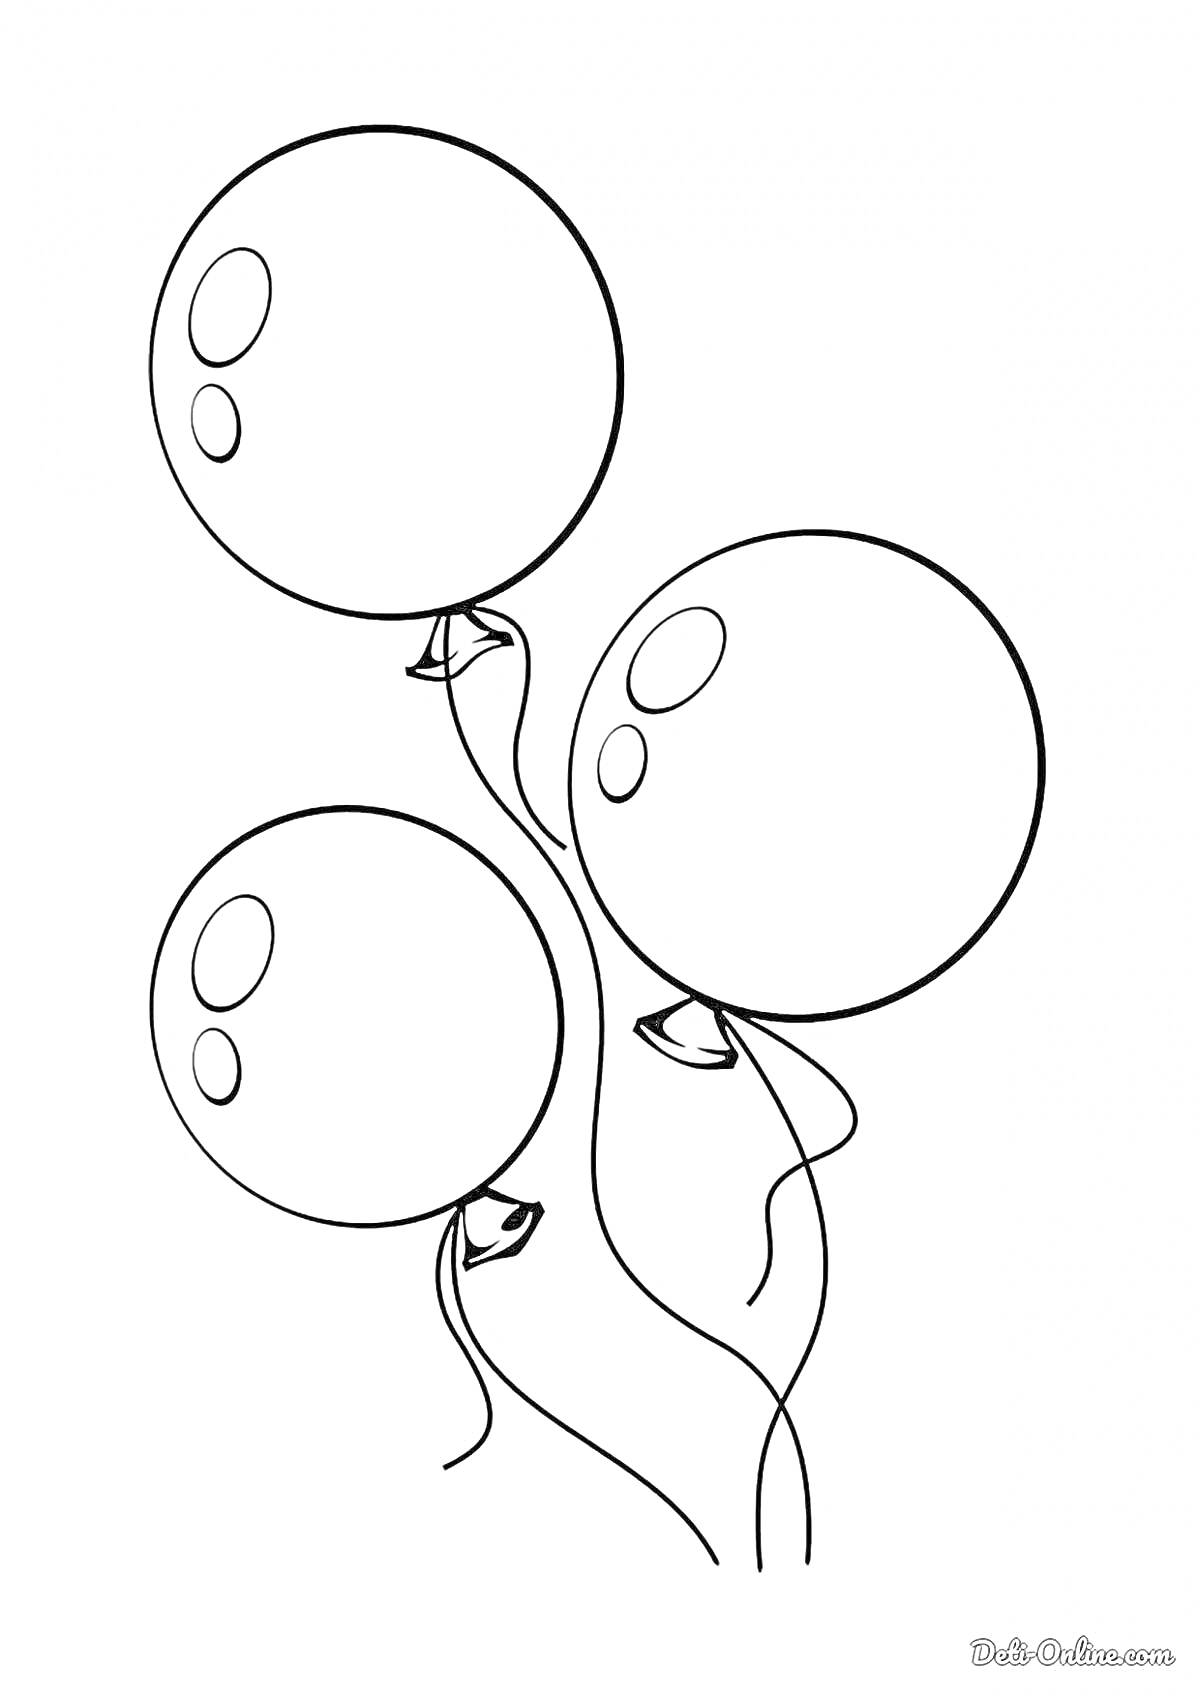 Раскраска Три воздушных шарика с отражениями и ленточками